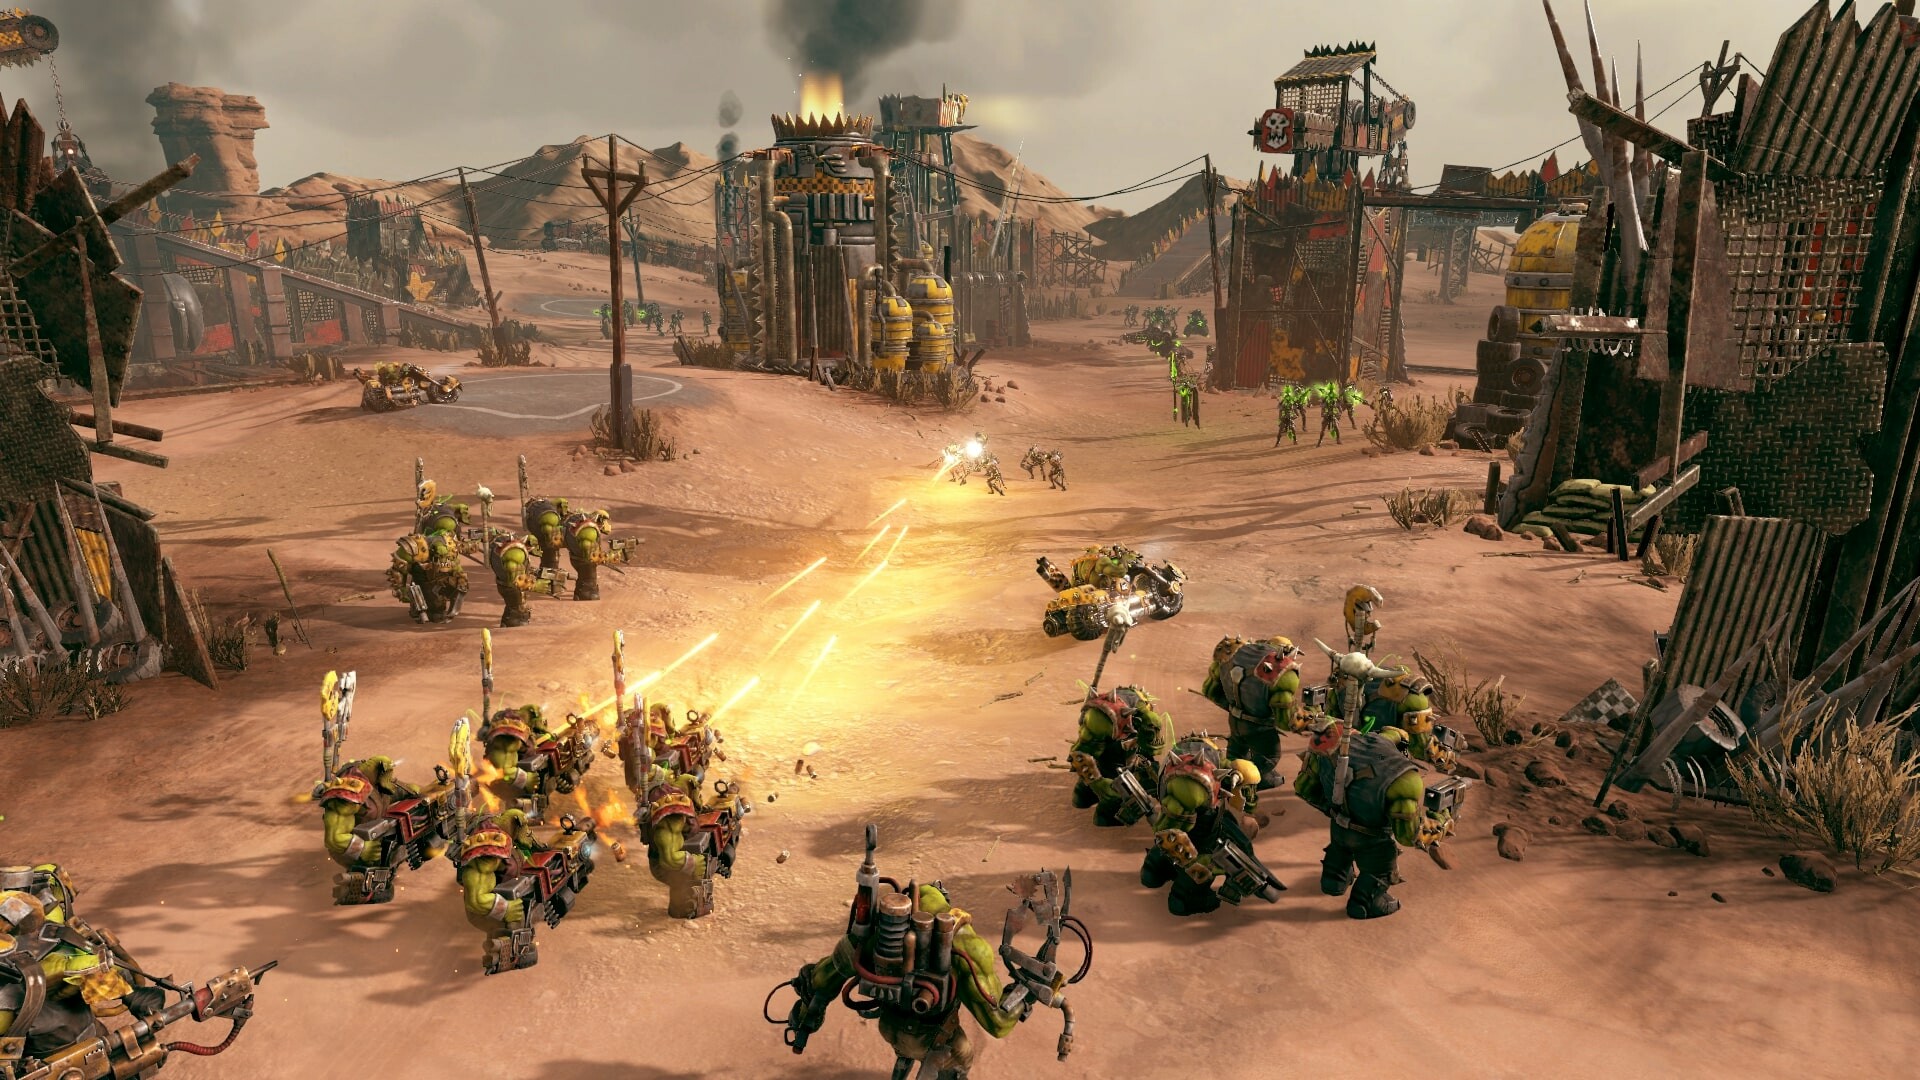 Warhammer 40,000: Battlesector - Orks